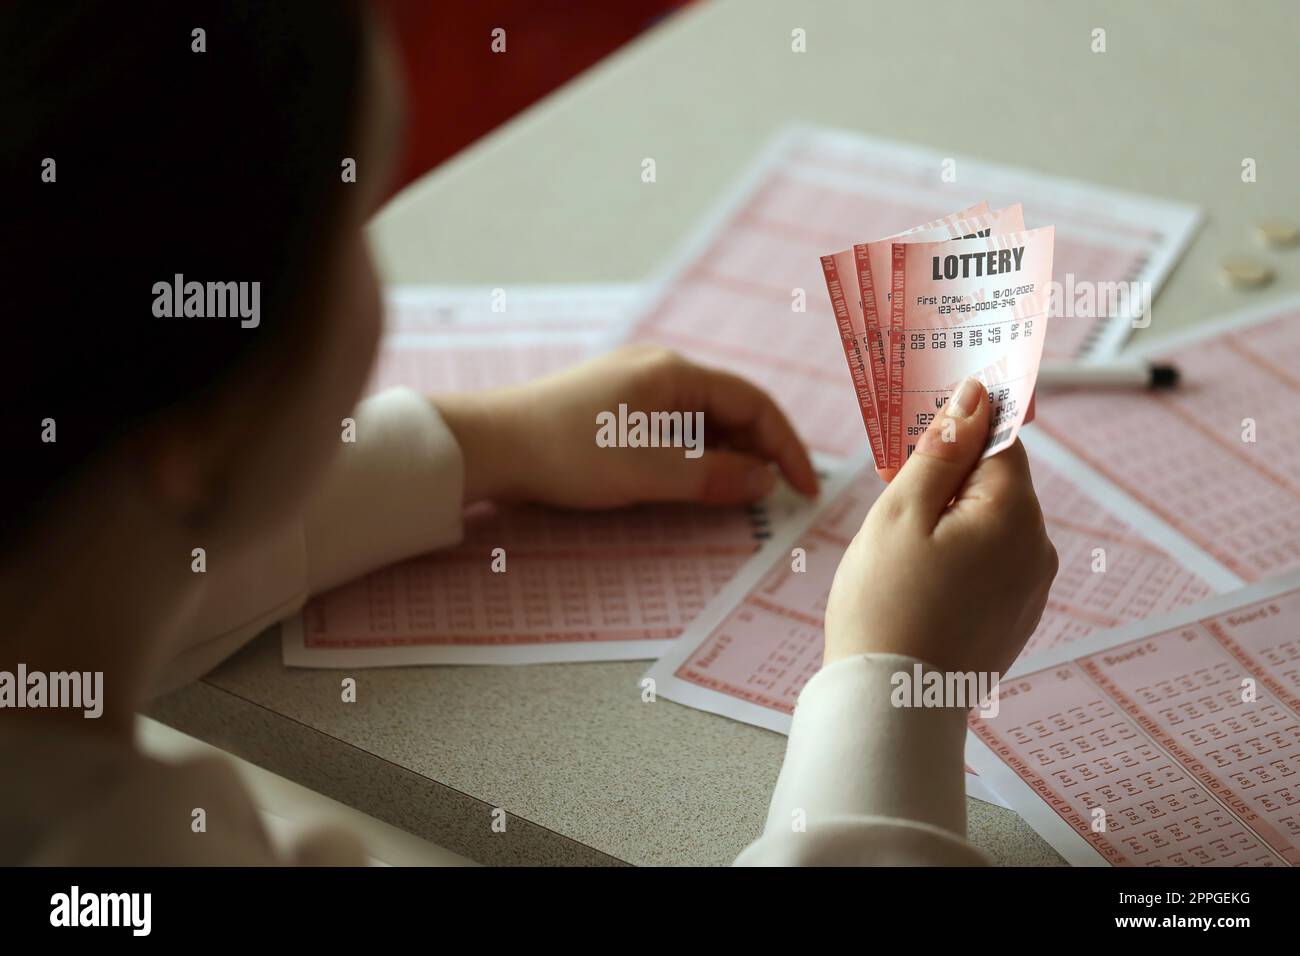 Remplir un billet de loterie. Une jeune femme tient le billet de loterie avec une rangée complète de numéros sur le fond des feuilles vierges de loterie. Banque D'Images